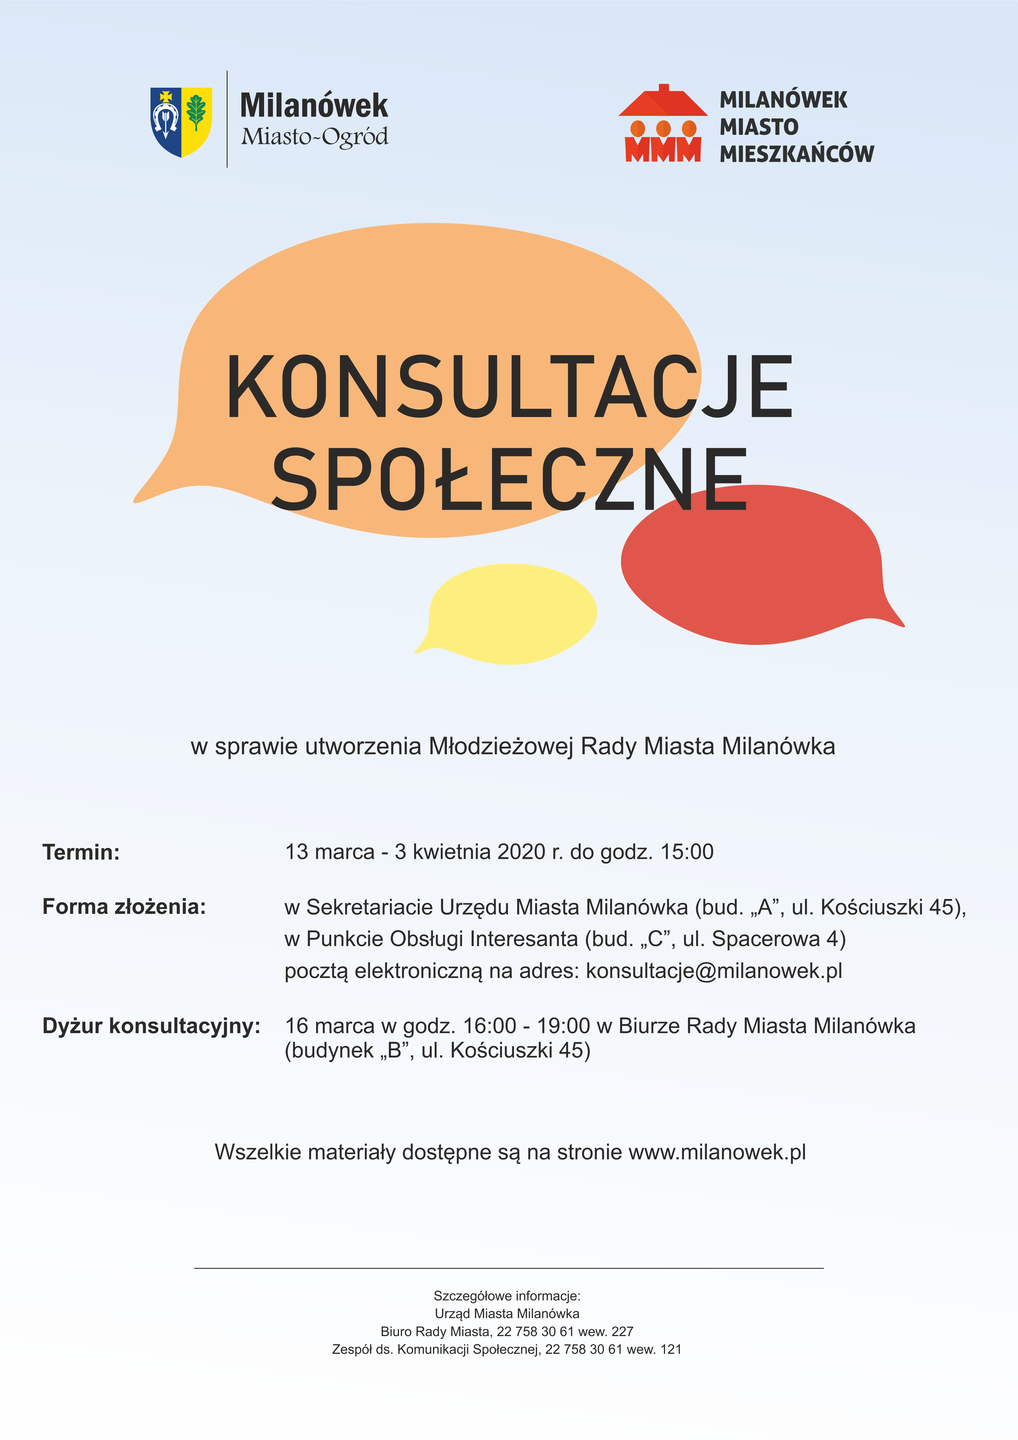 Plakat zawierający informacje o konsultacjach w sprawie utworzenia Młodzieżowej Rady Miasta Milanówka